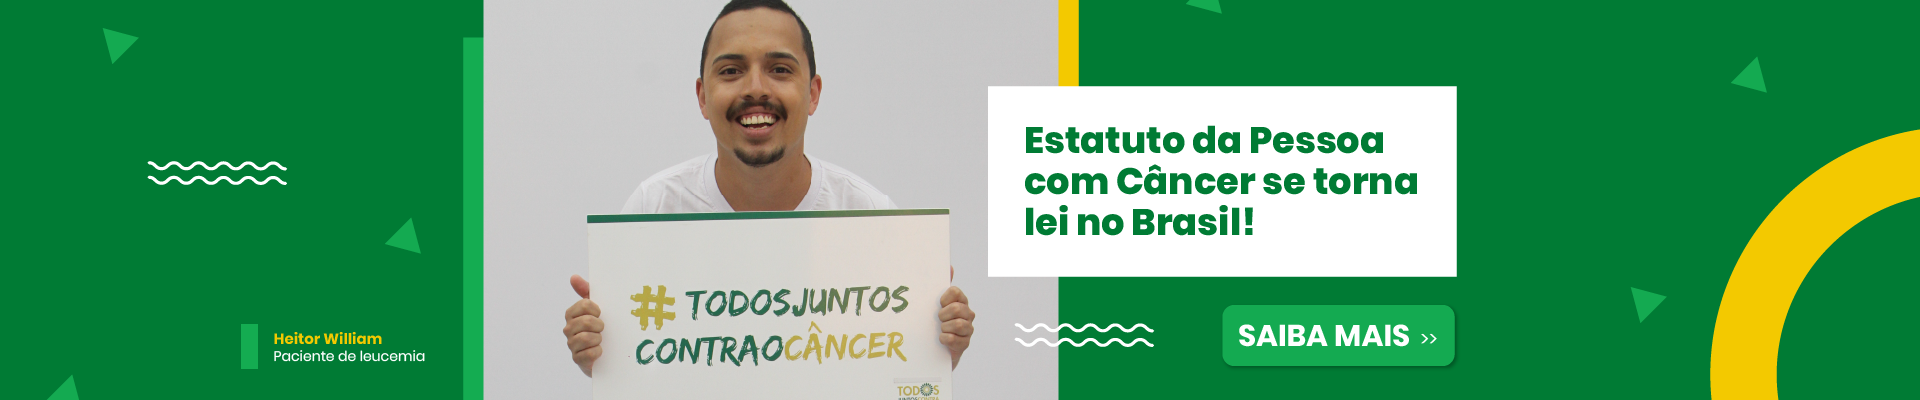 imagem de um paciente oncológico, Heitor William segurando uma placa com do Movimento Todos Juntos Contra o Câncer a ao lado o escrito, Estatuto da Pessoa com Câncer se torna lei no Brasil